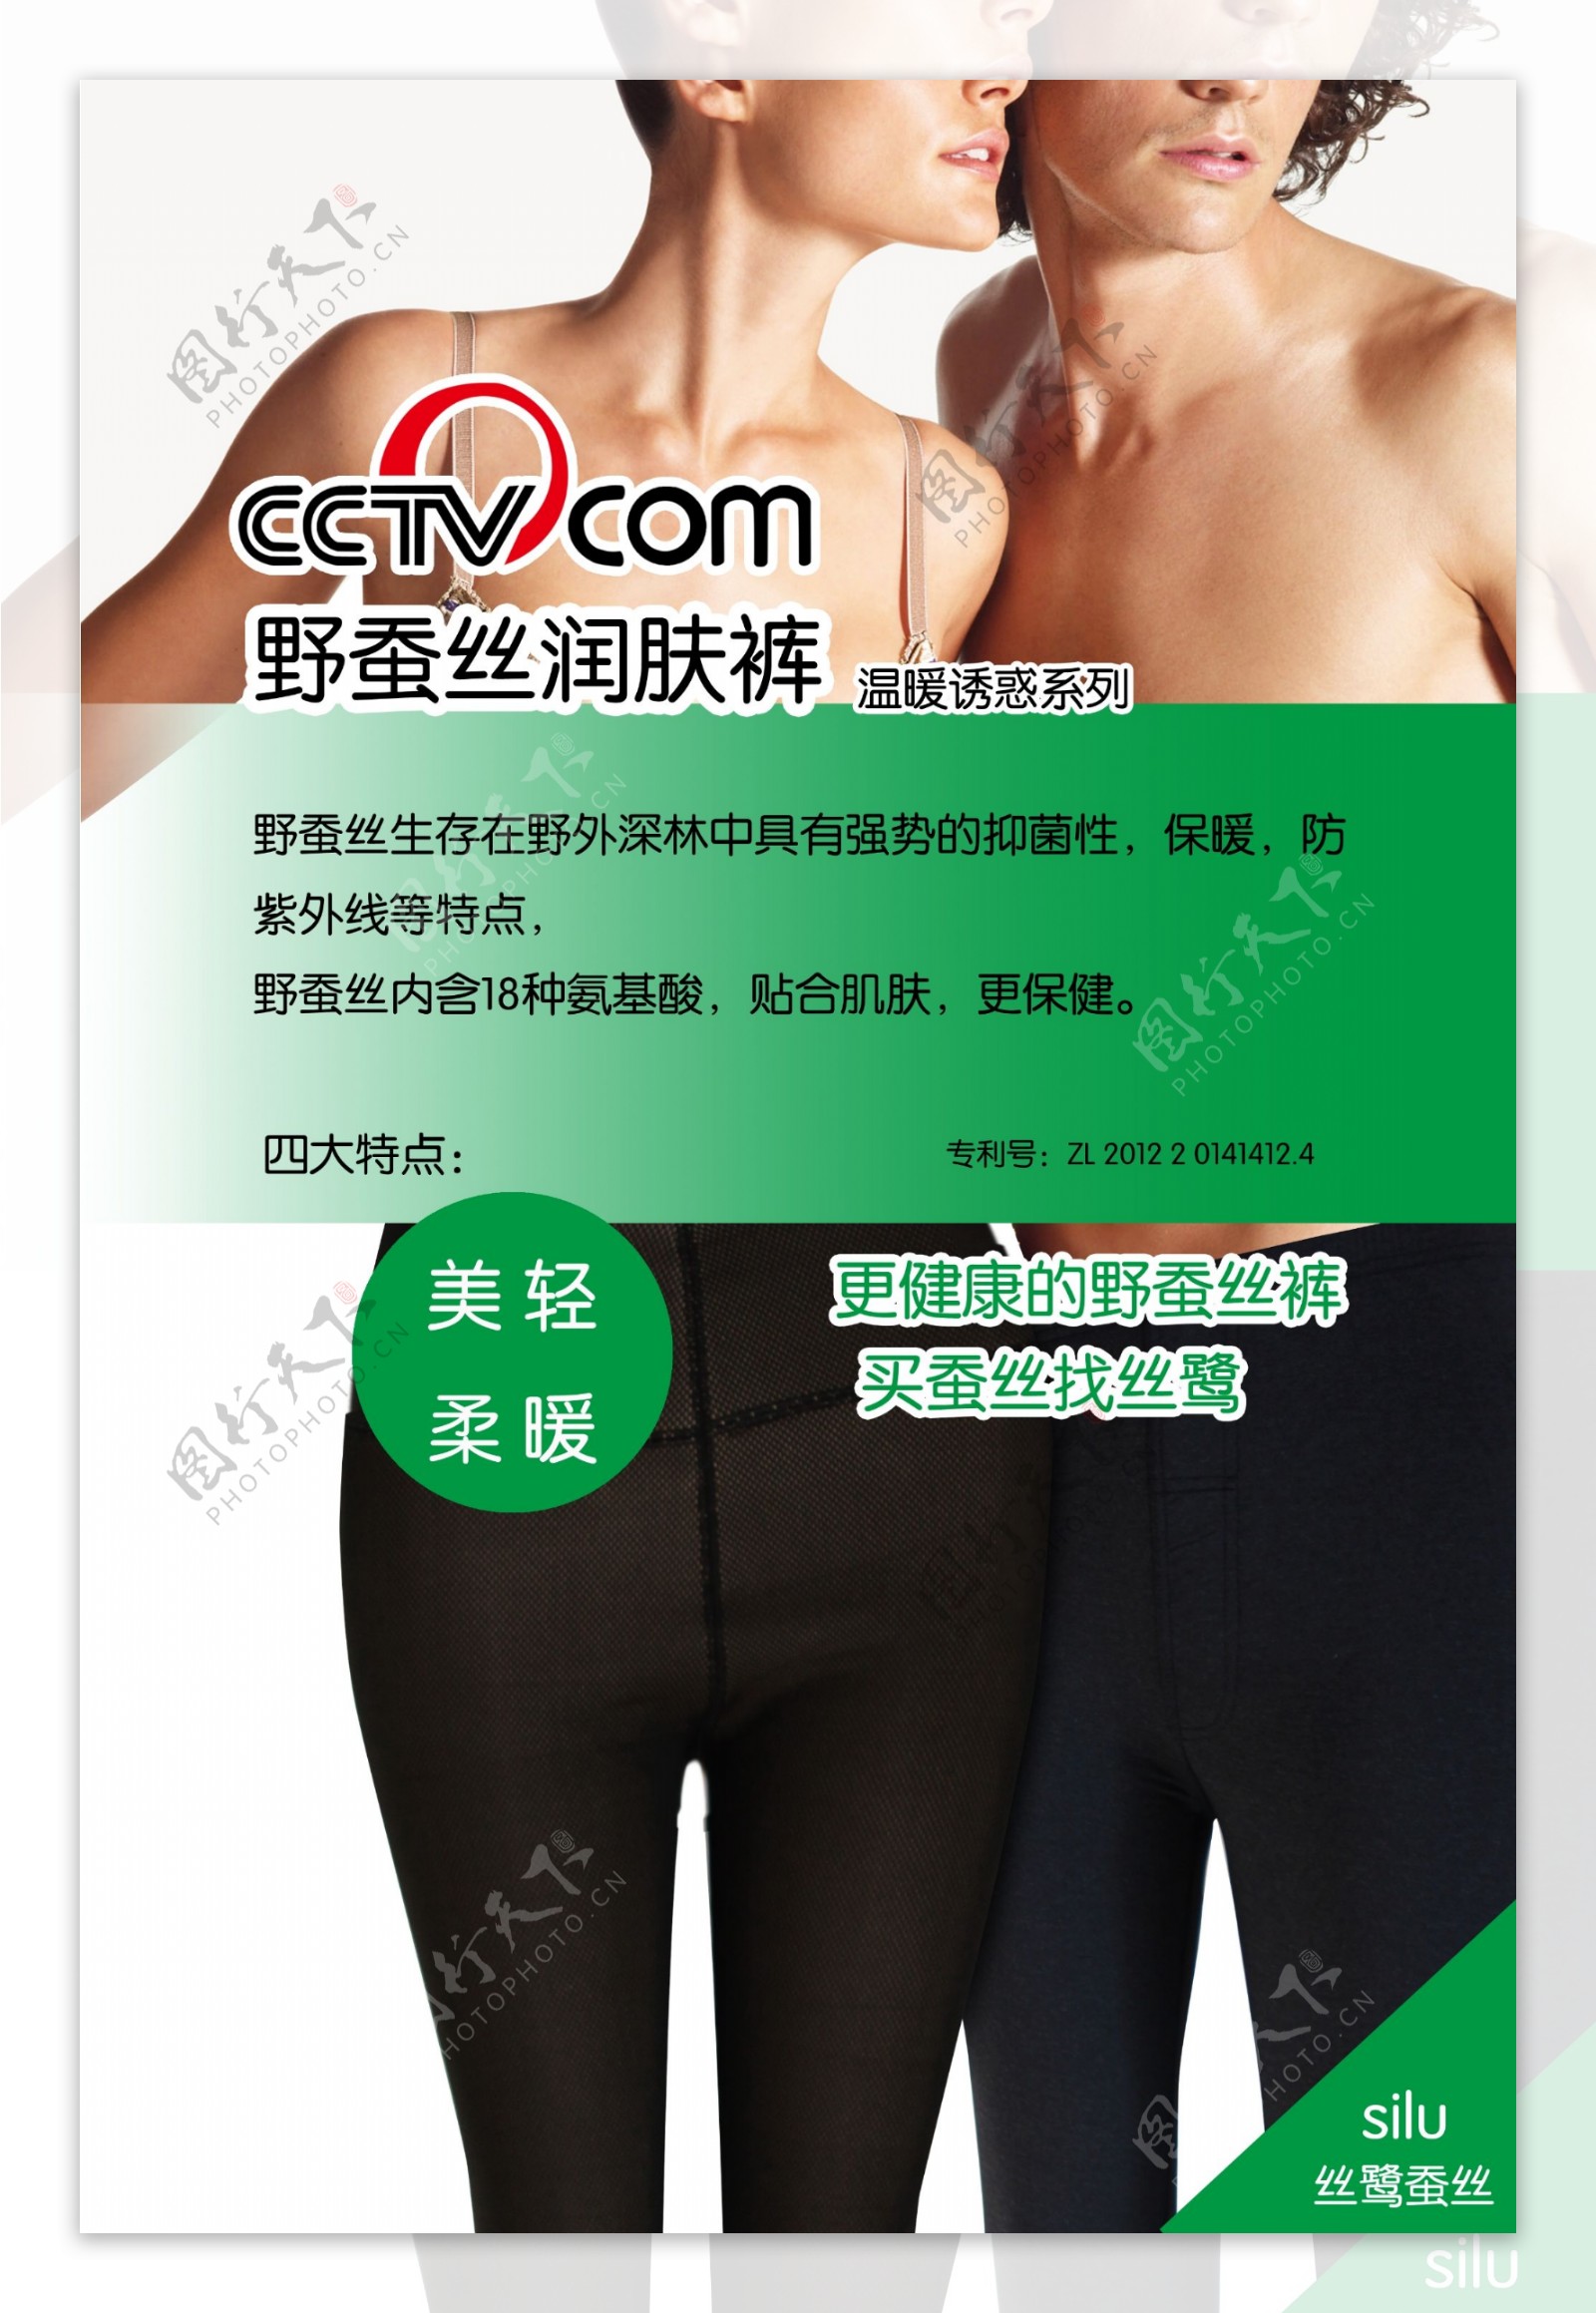 蚕丝棉裤广告图片